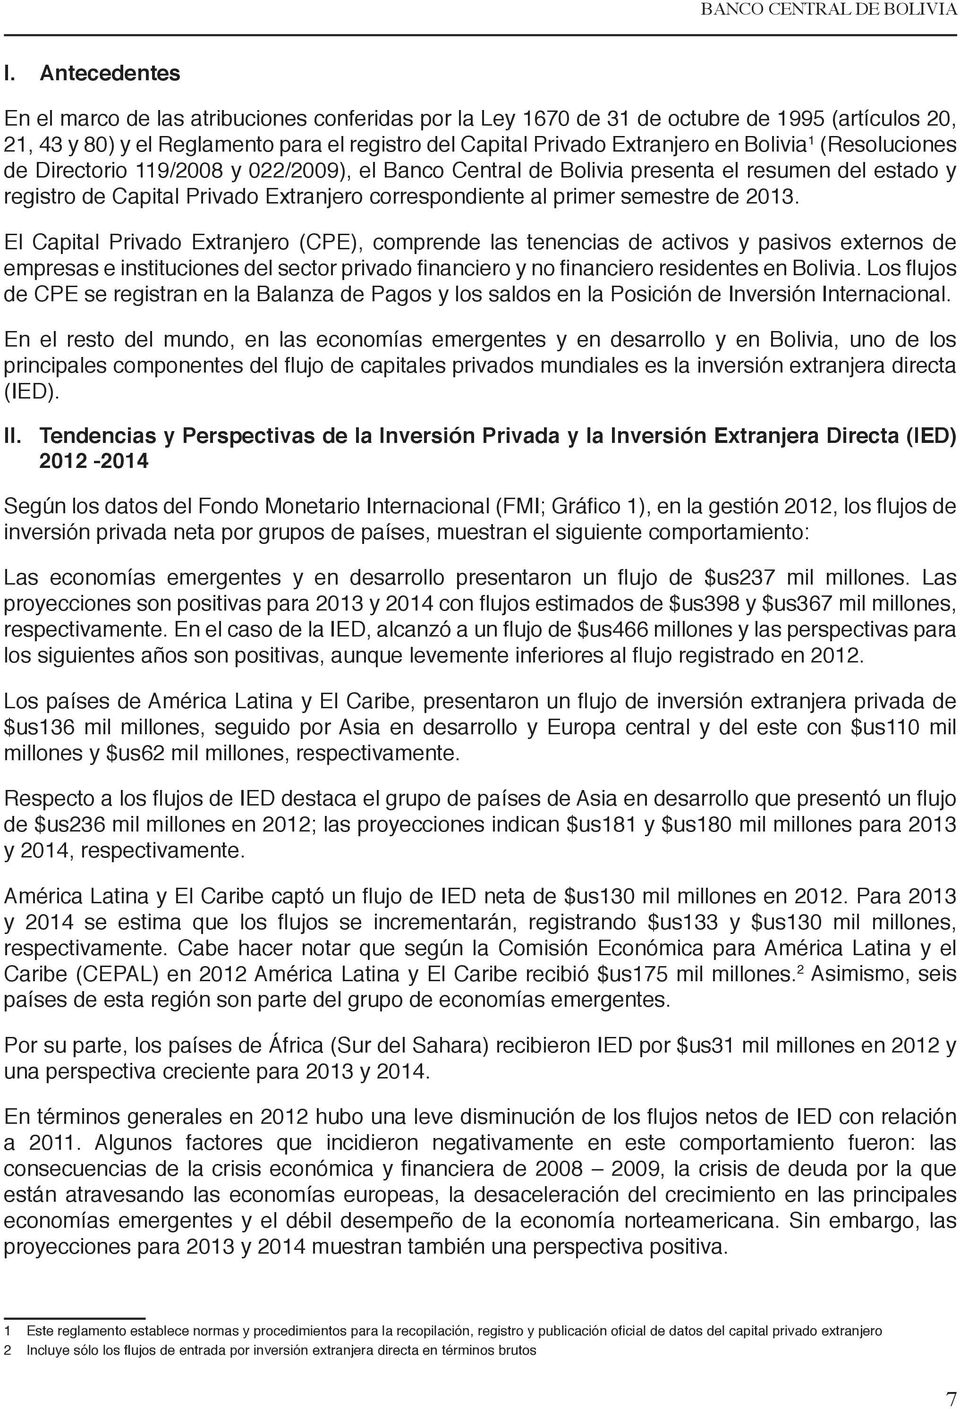 1 (Resoluciones de Directorio 119/2008 y 022/2009), el Banco Central de Bolivia presenta el resumen del estado y registro de Capital Privado Extranjero correspondiente al primer semestre de 2013.